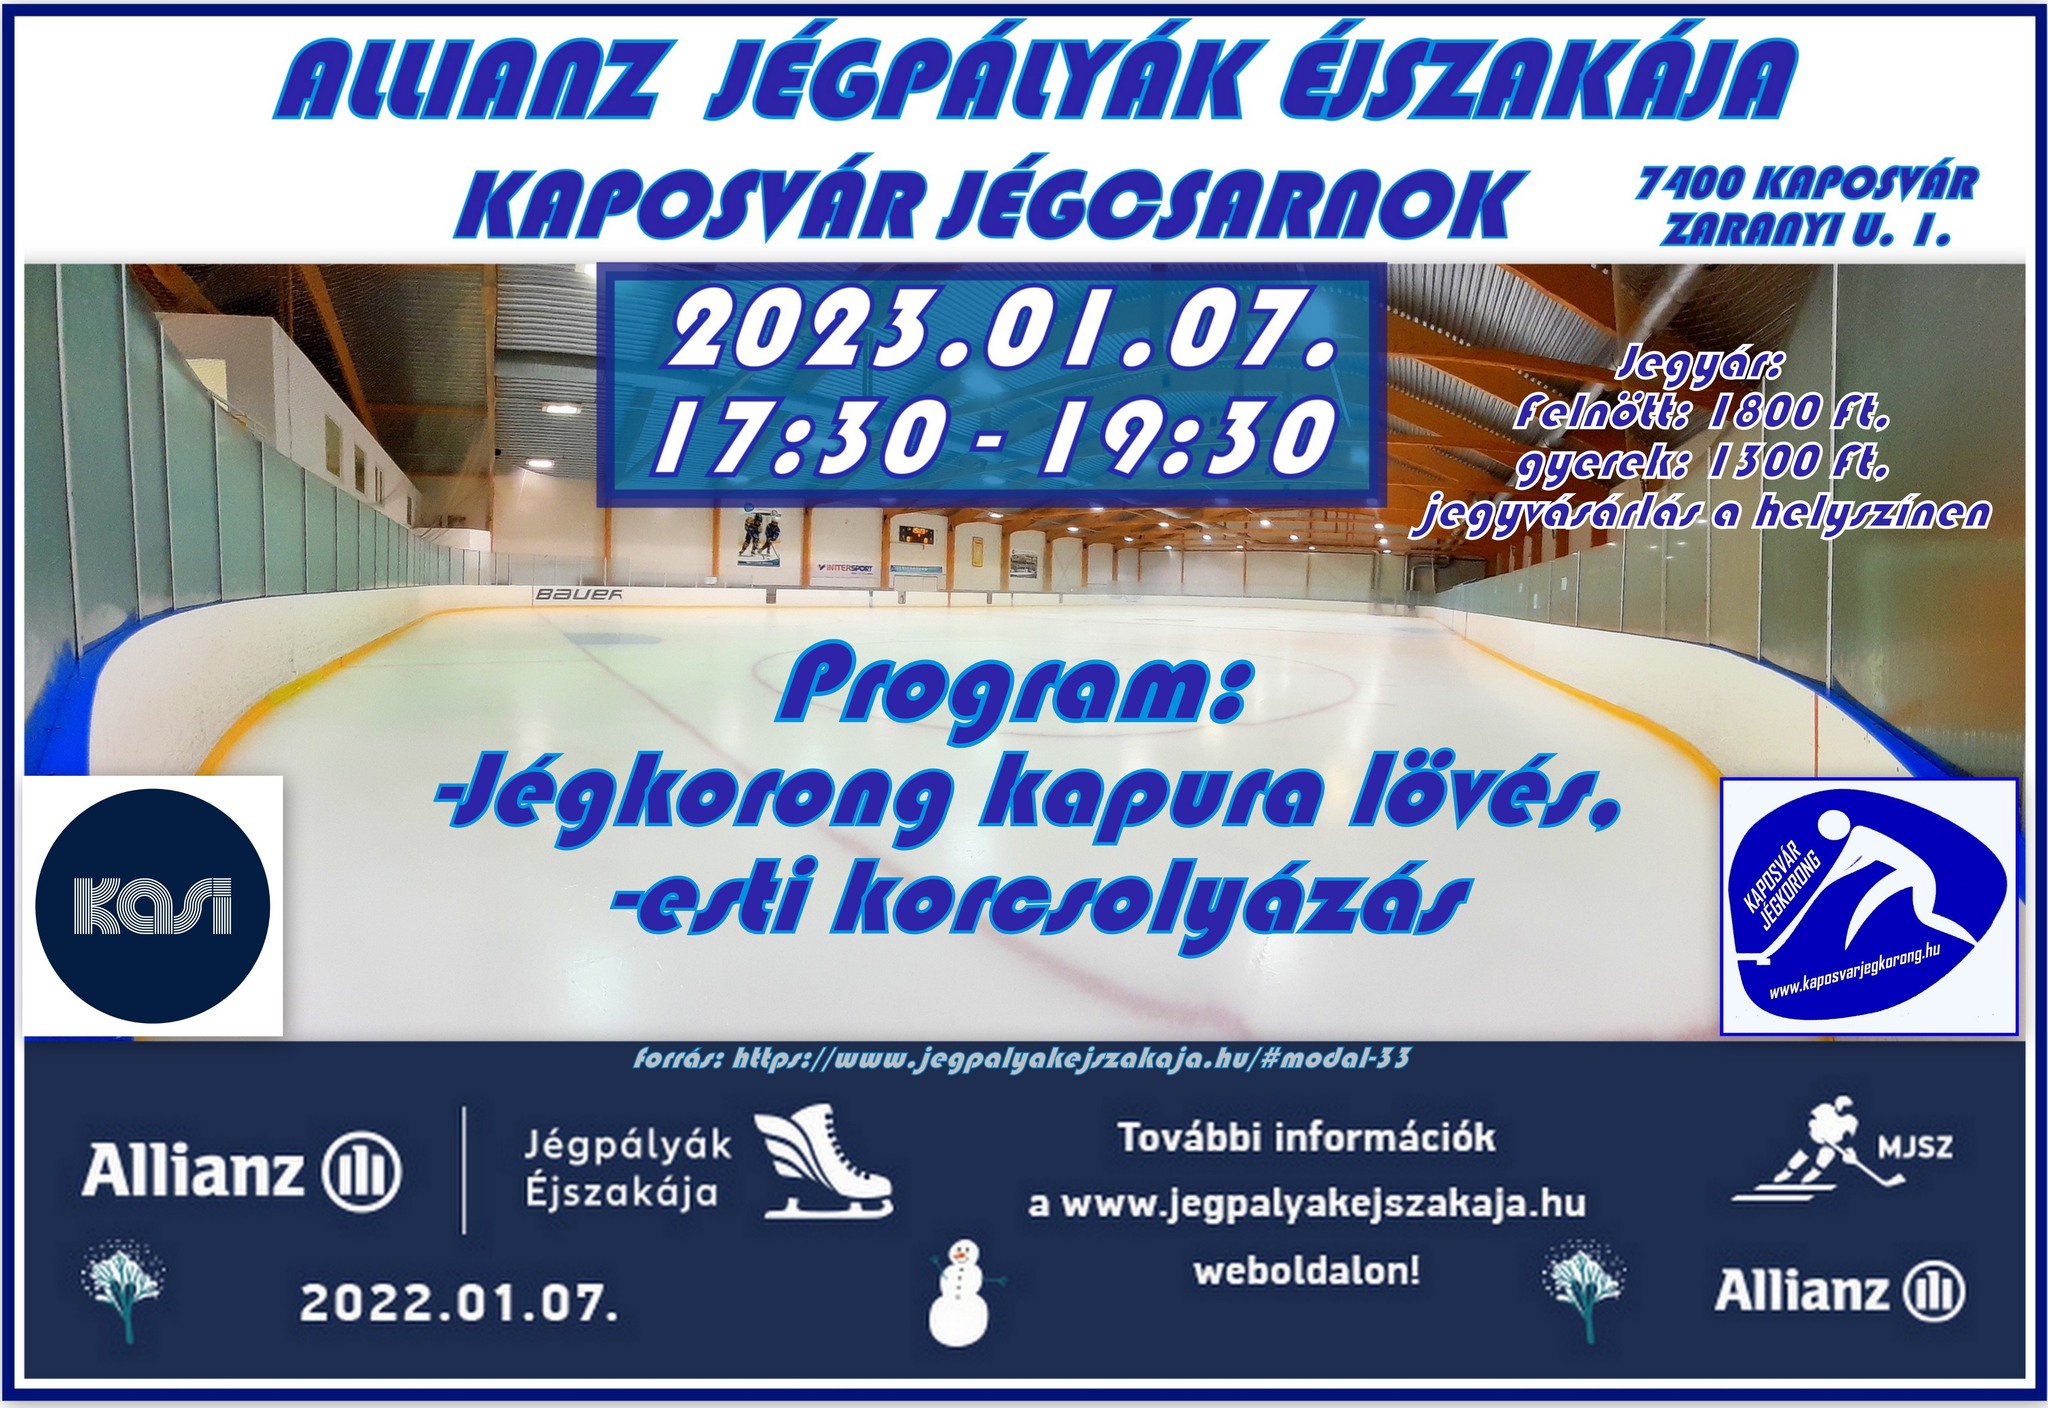 You are currently viewing Allianz Jégpályák Éjszakája – Kaposvár Jégcsarnok 2023.01.07.